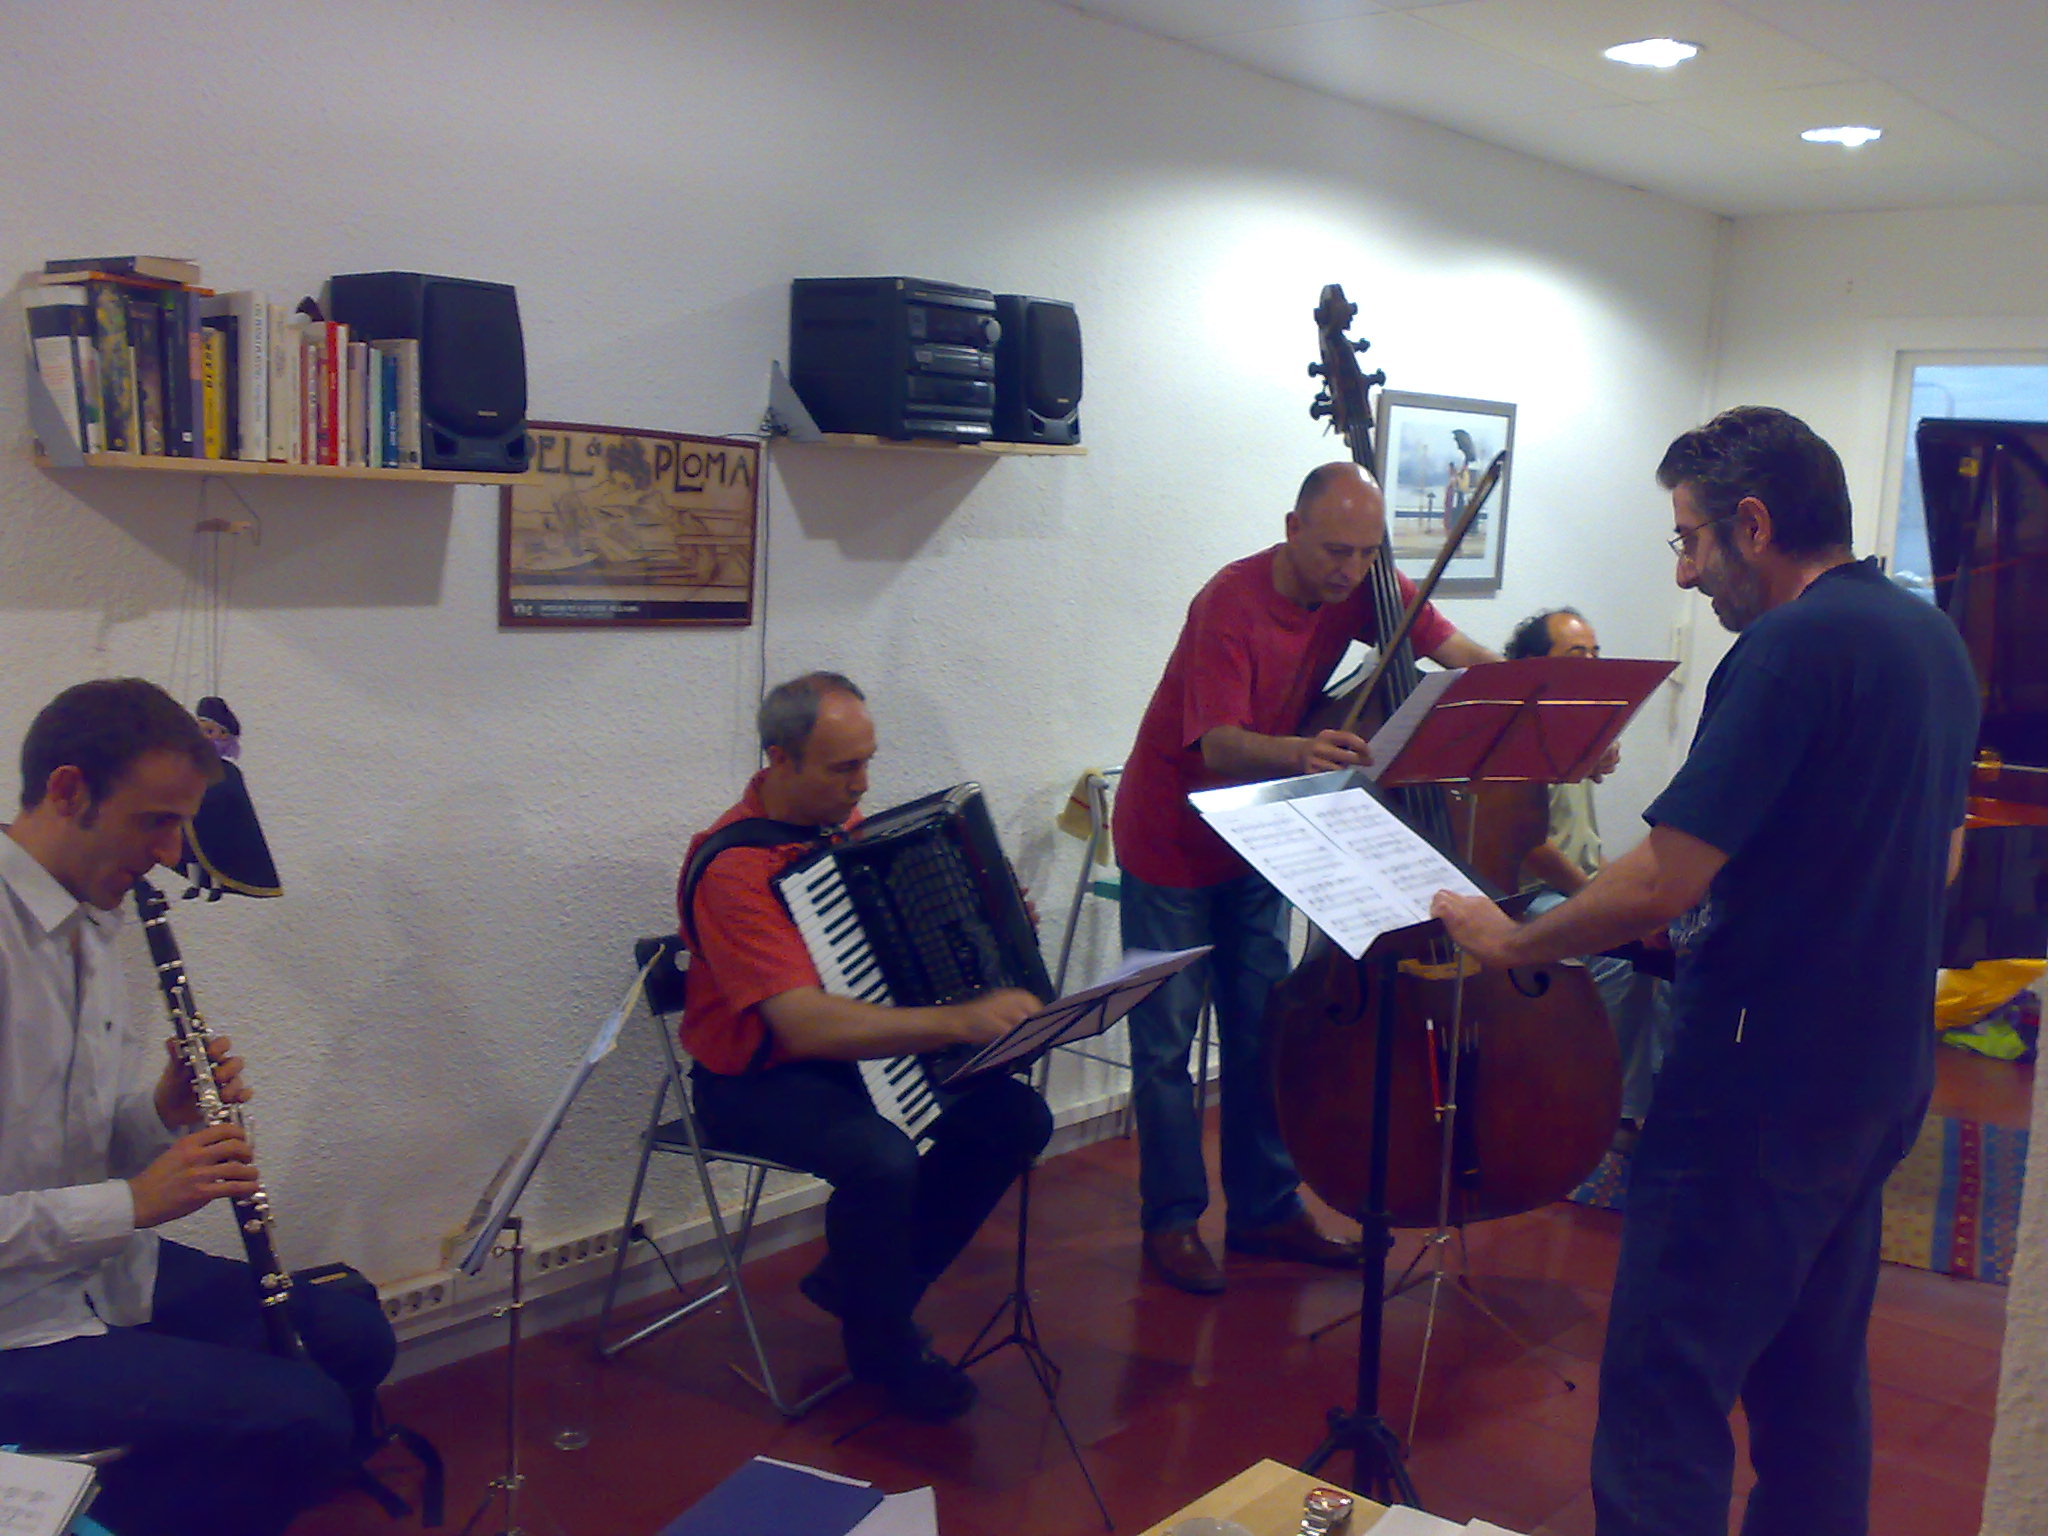  con C. Pertegaz, M.A. Maestro, M. Ortega y C. Silva